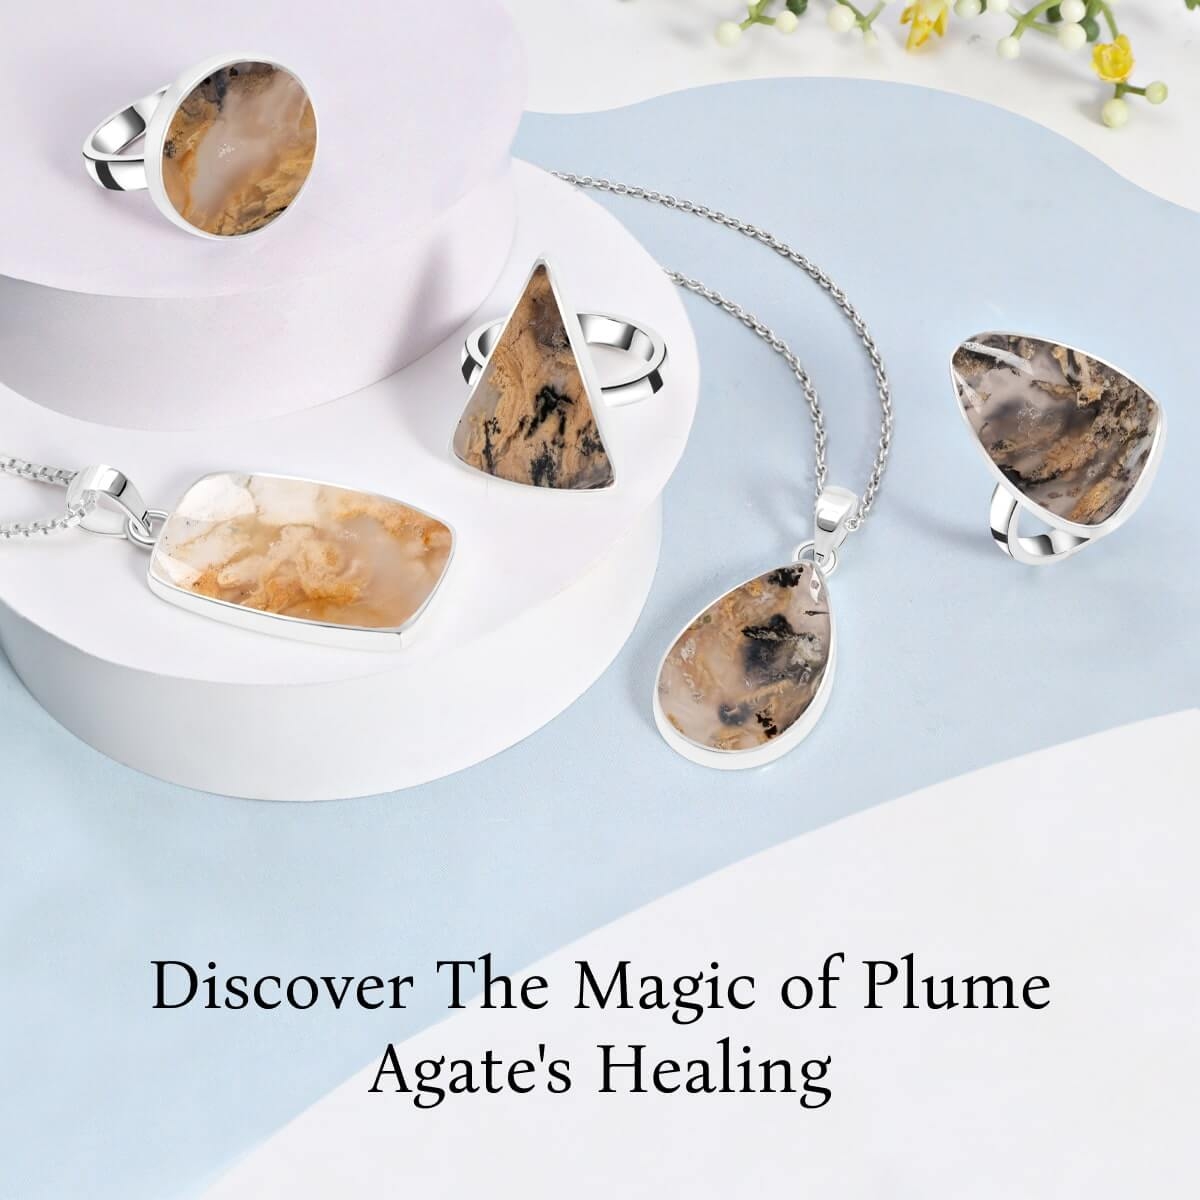 Plume Agate Healing Properties